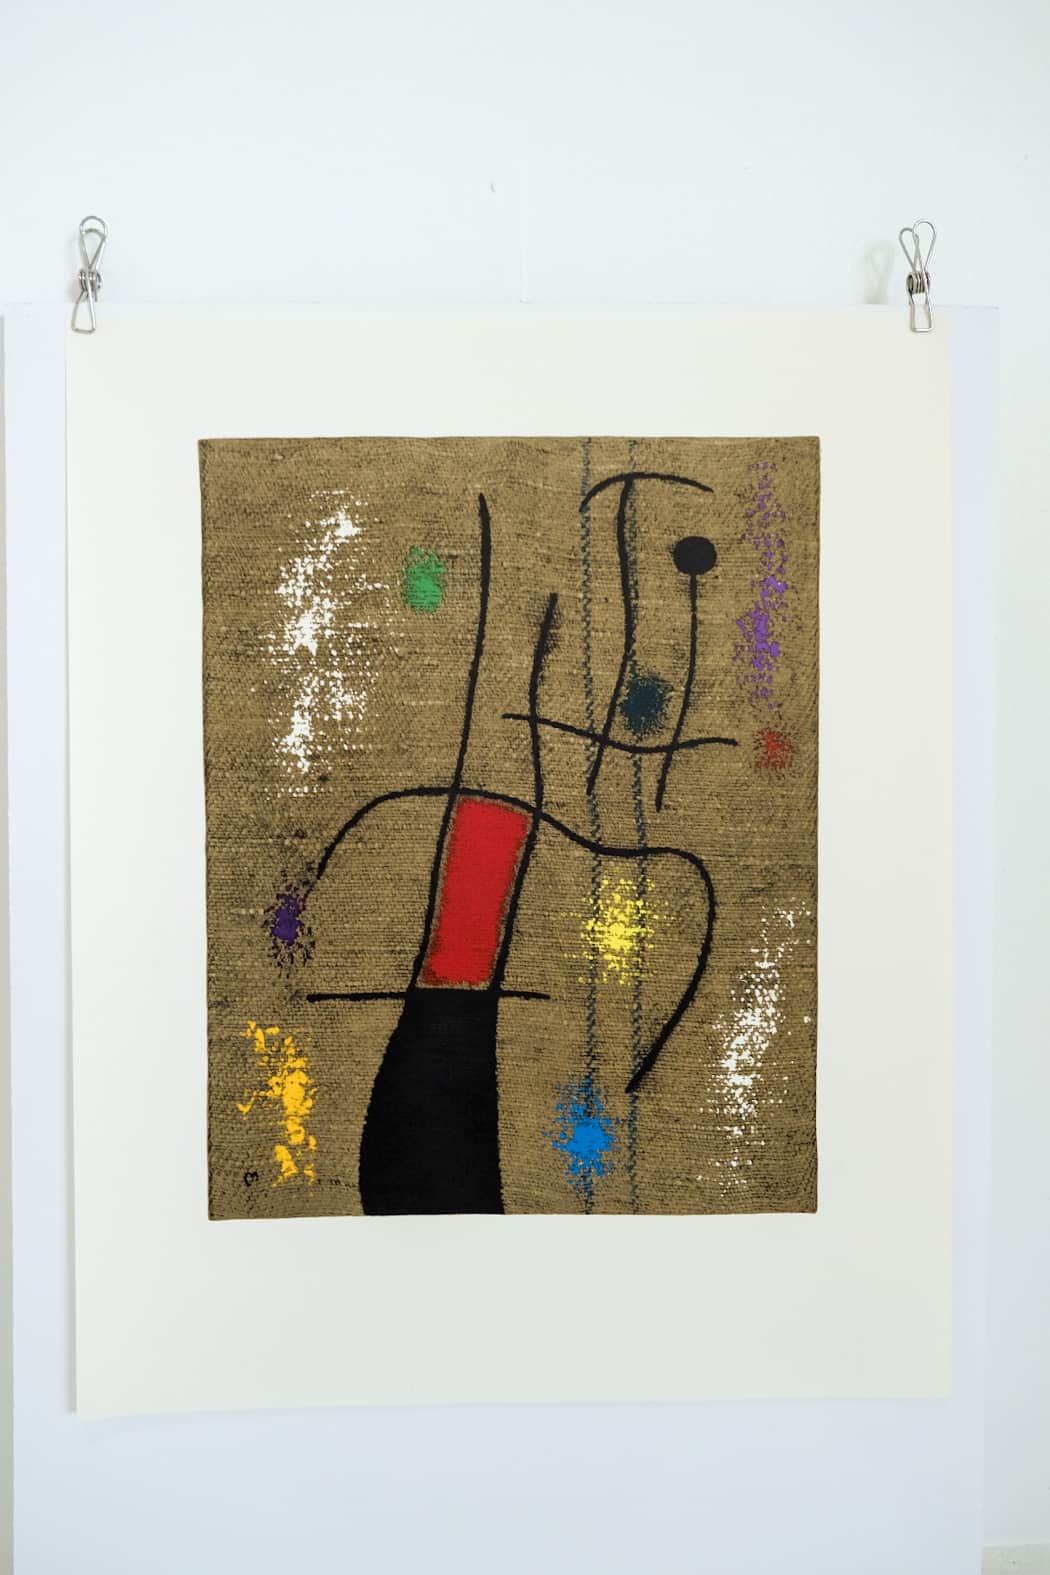 Joan Miro FEMME ET OISEAU V/X Plate #18